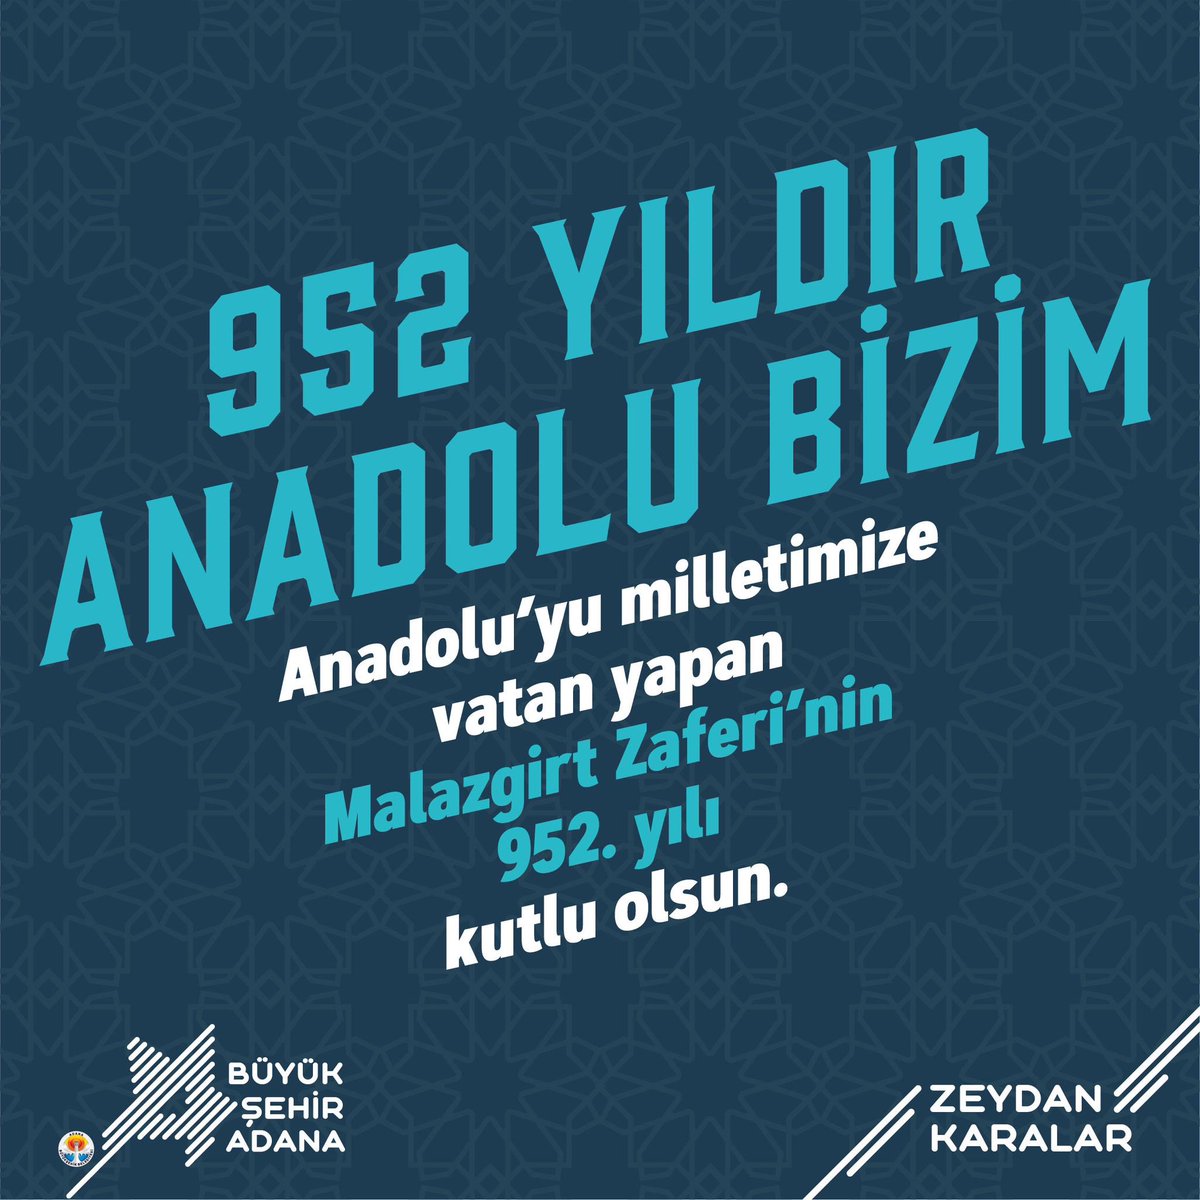 952 yıldır Anadolu bizim Anadolu'yu milletimize vatan yapan #MalazgirtZaferi'mizin 952. yılı kutlu olsun.